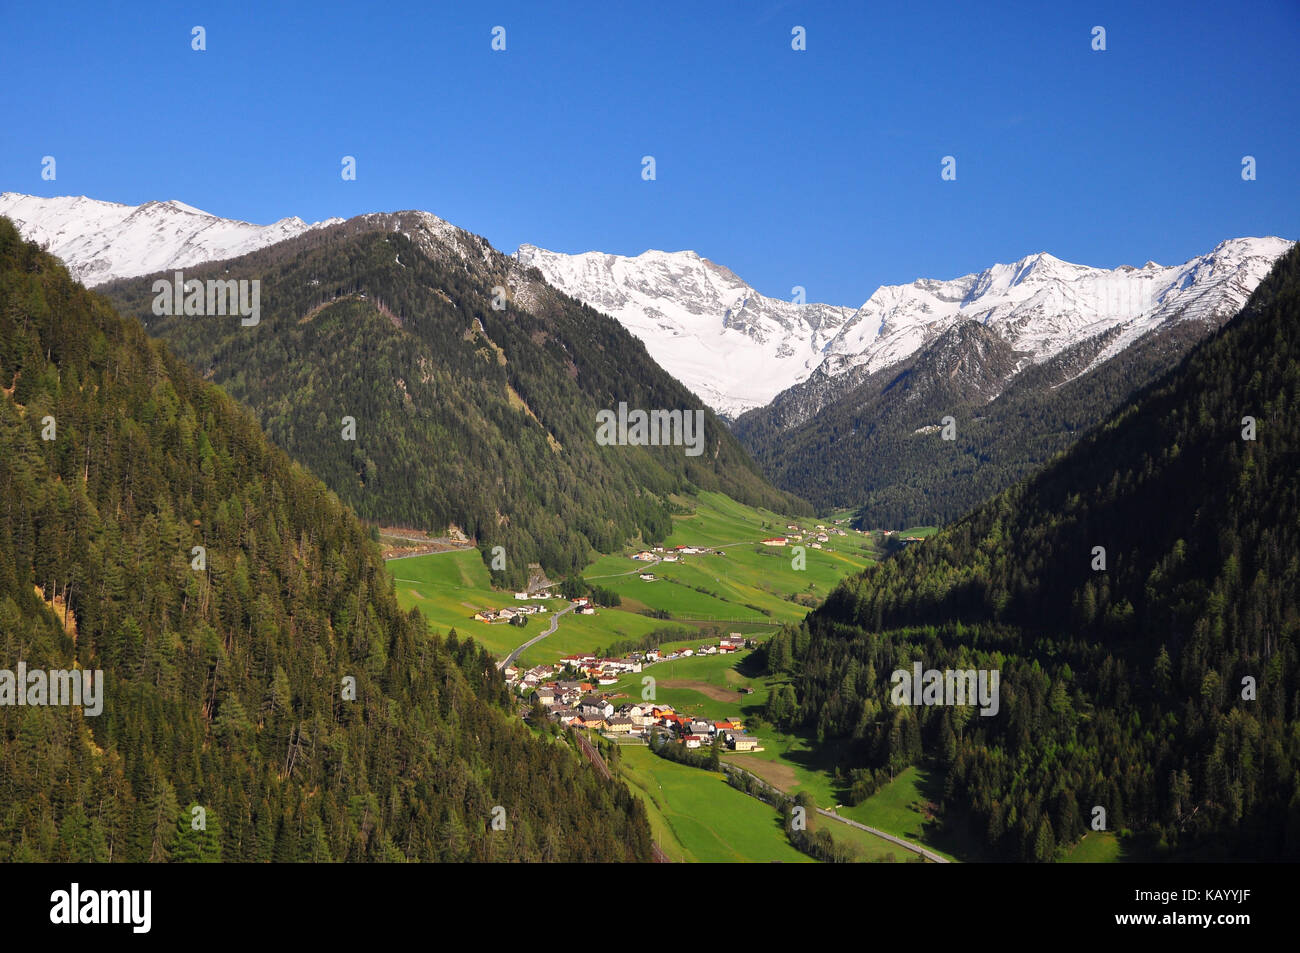 Austria, Tyrol, Wipptal, mountain village, Tuxer alps, Stock Photo